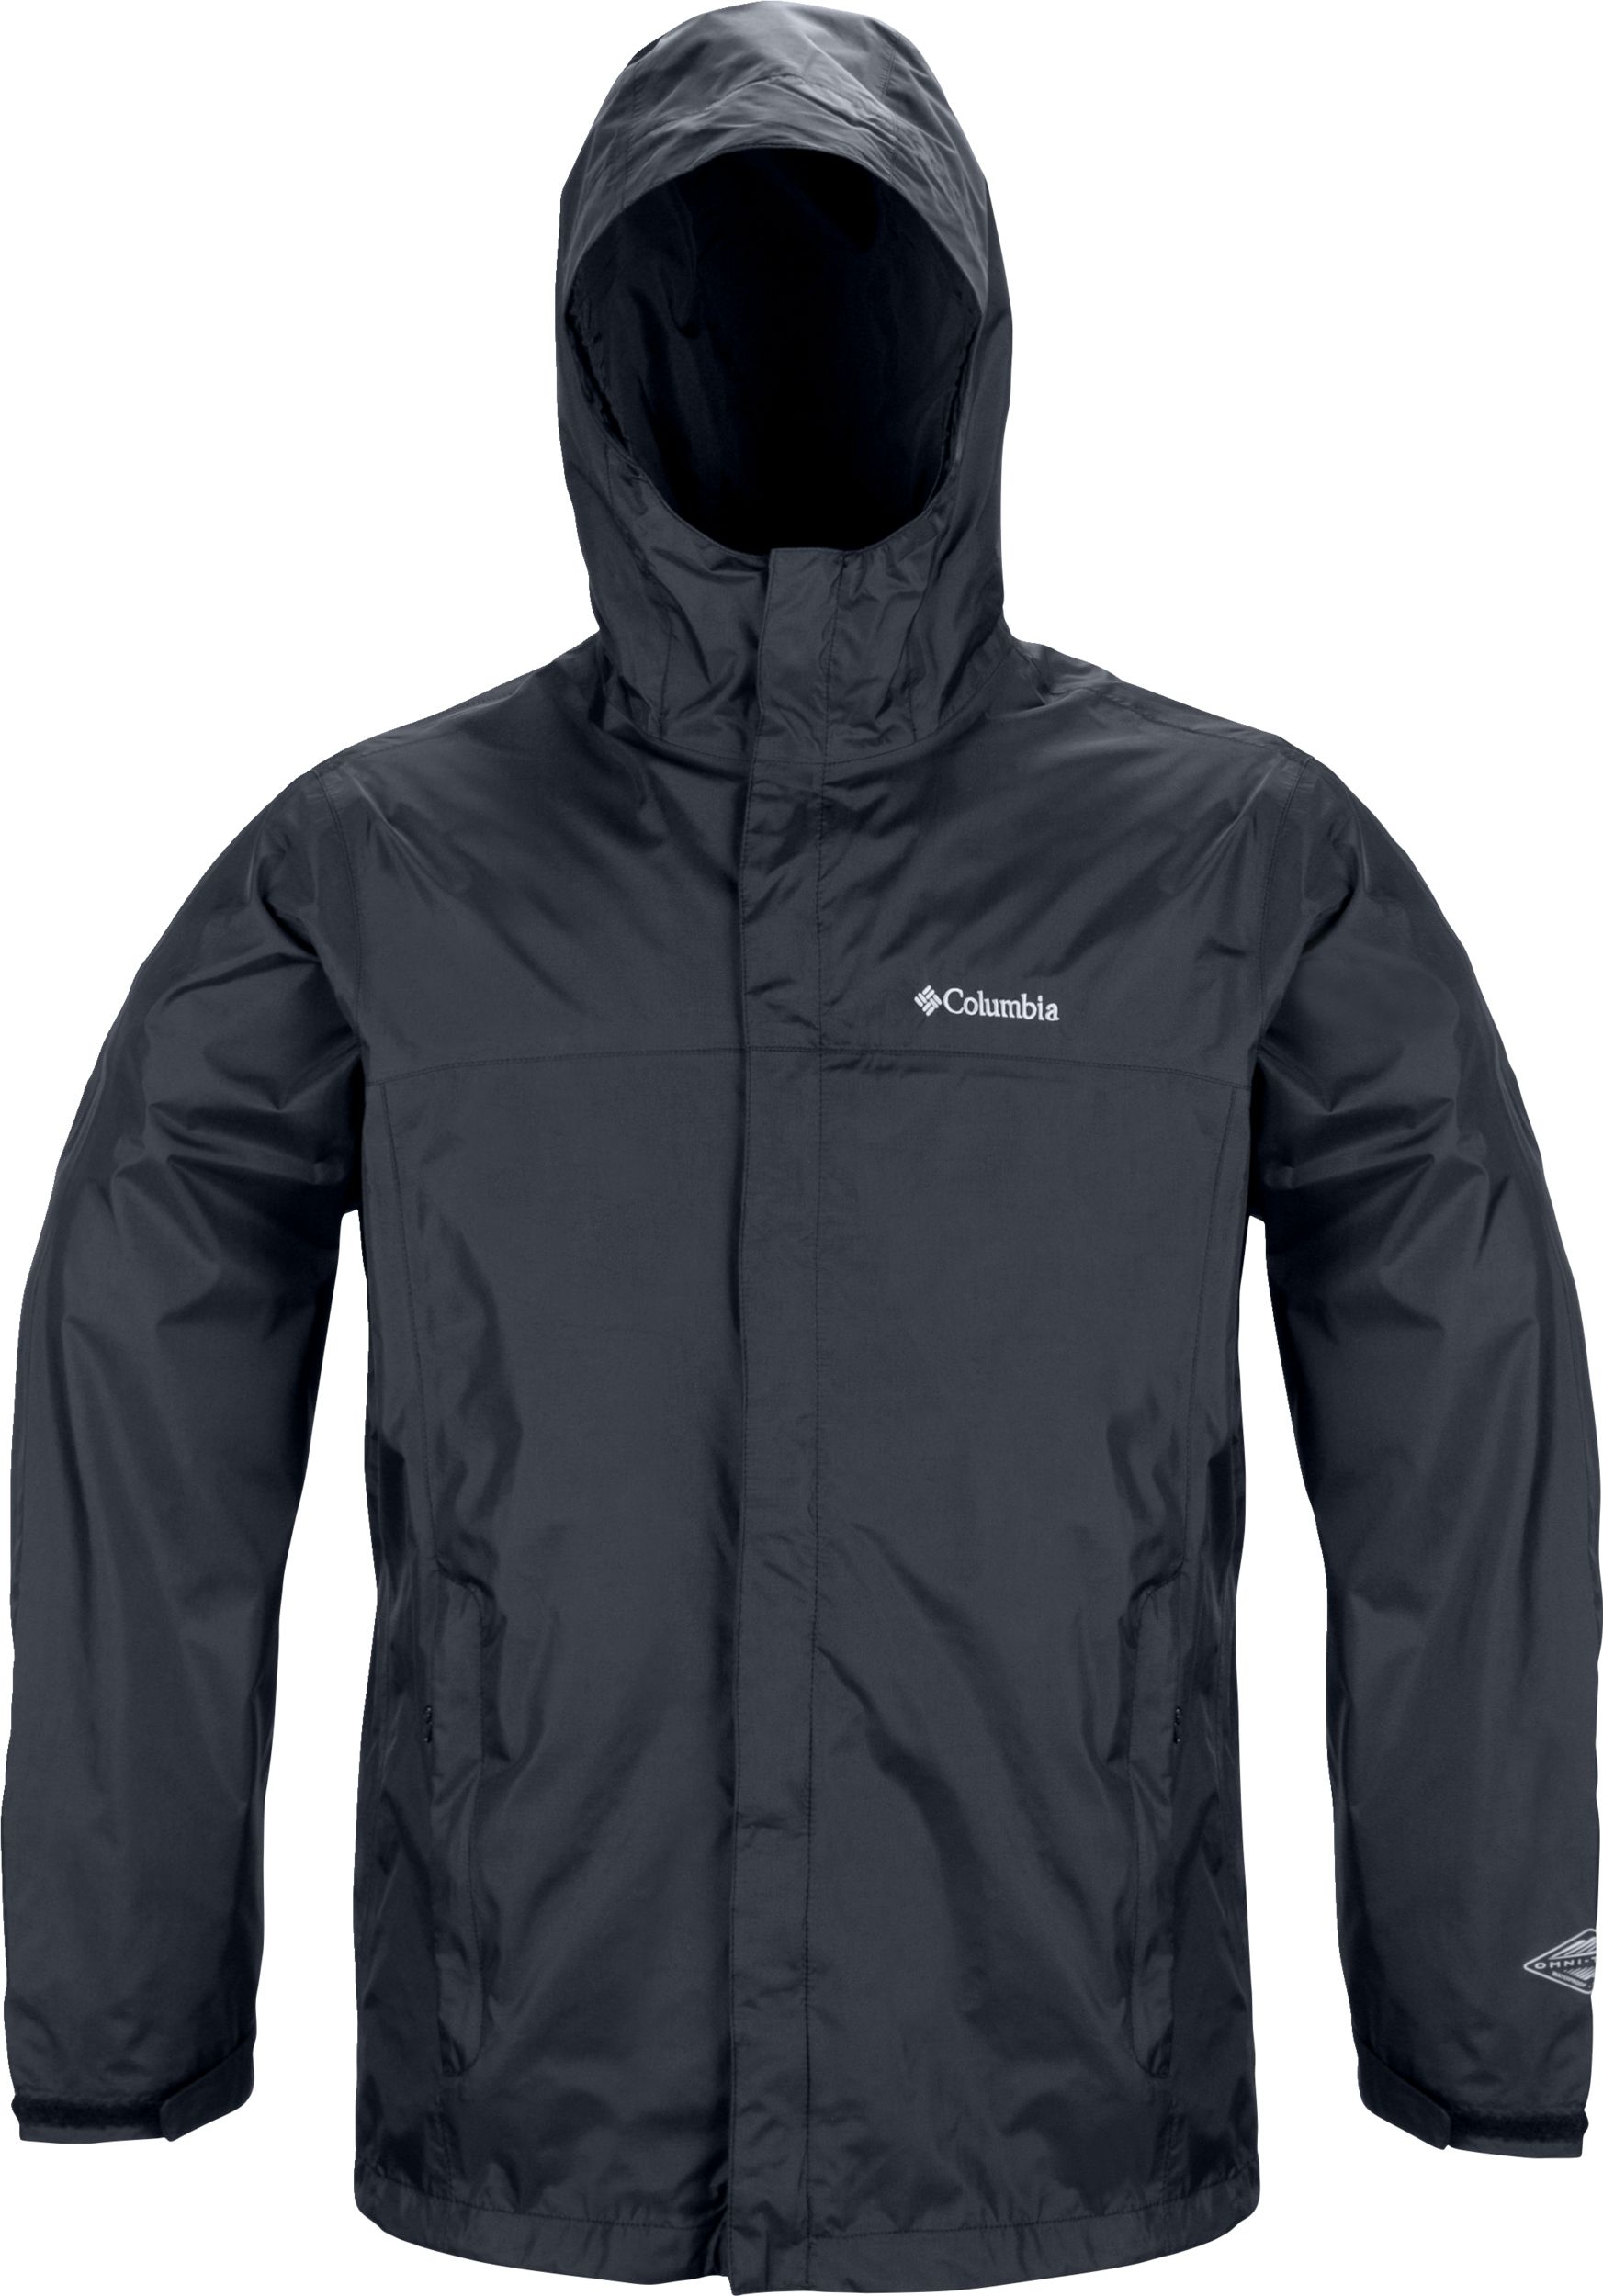 Columbia Men's Watertight II Hooded Rain Jacket  Waterproof Breathable Packable Hiking